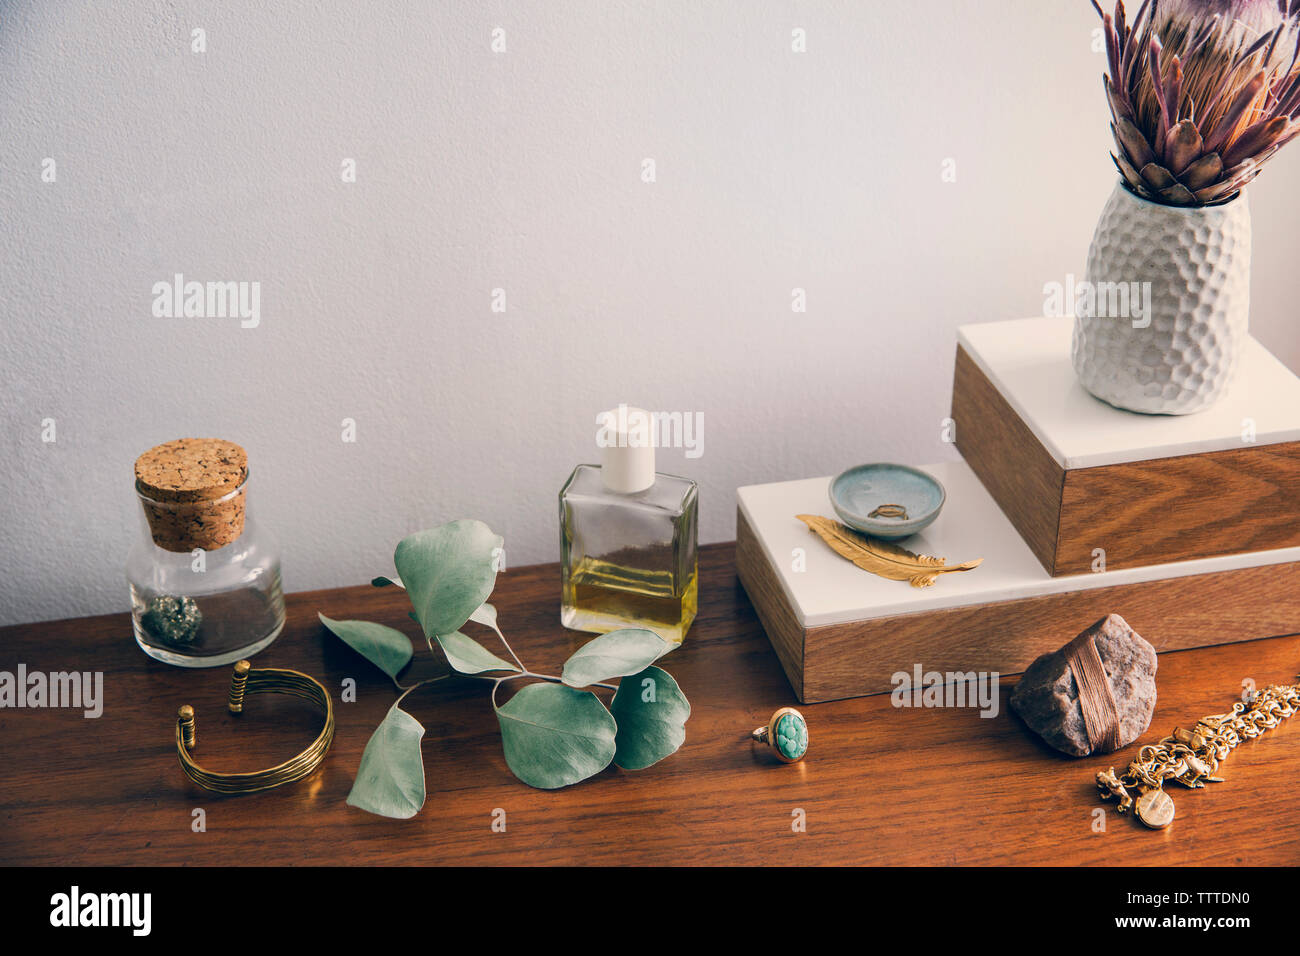 Un alto ángulo de visualización del florero con joyas y productos de belleza en la tabla Foto de stock